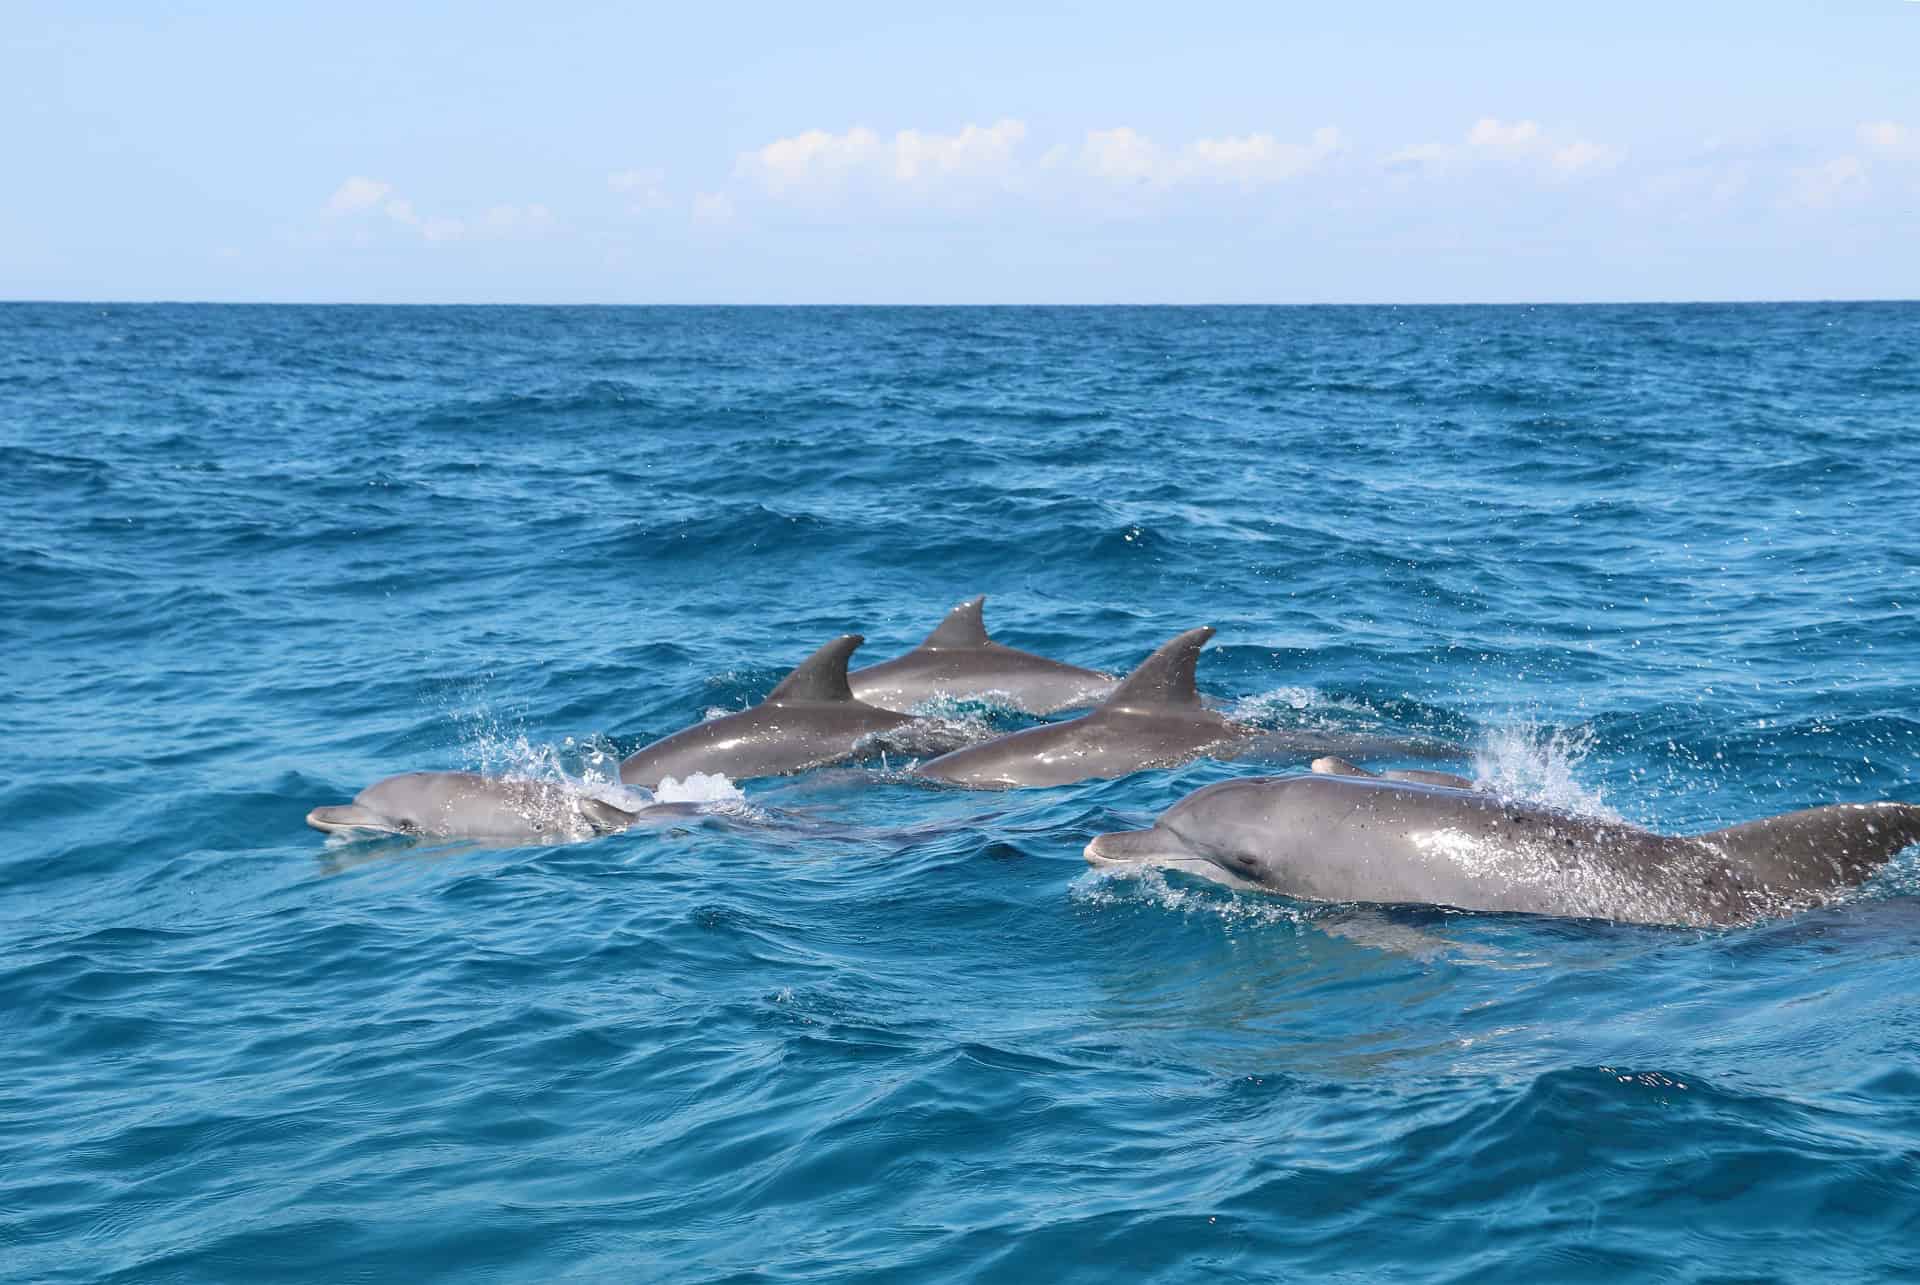 kizimkazi dauphins